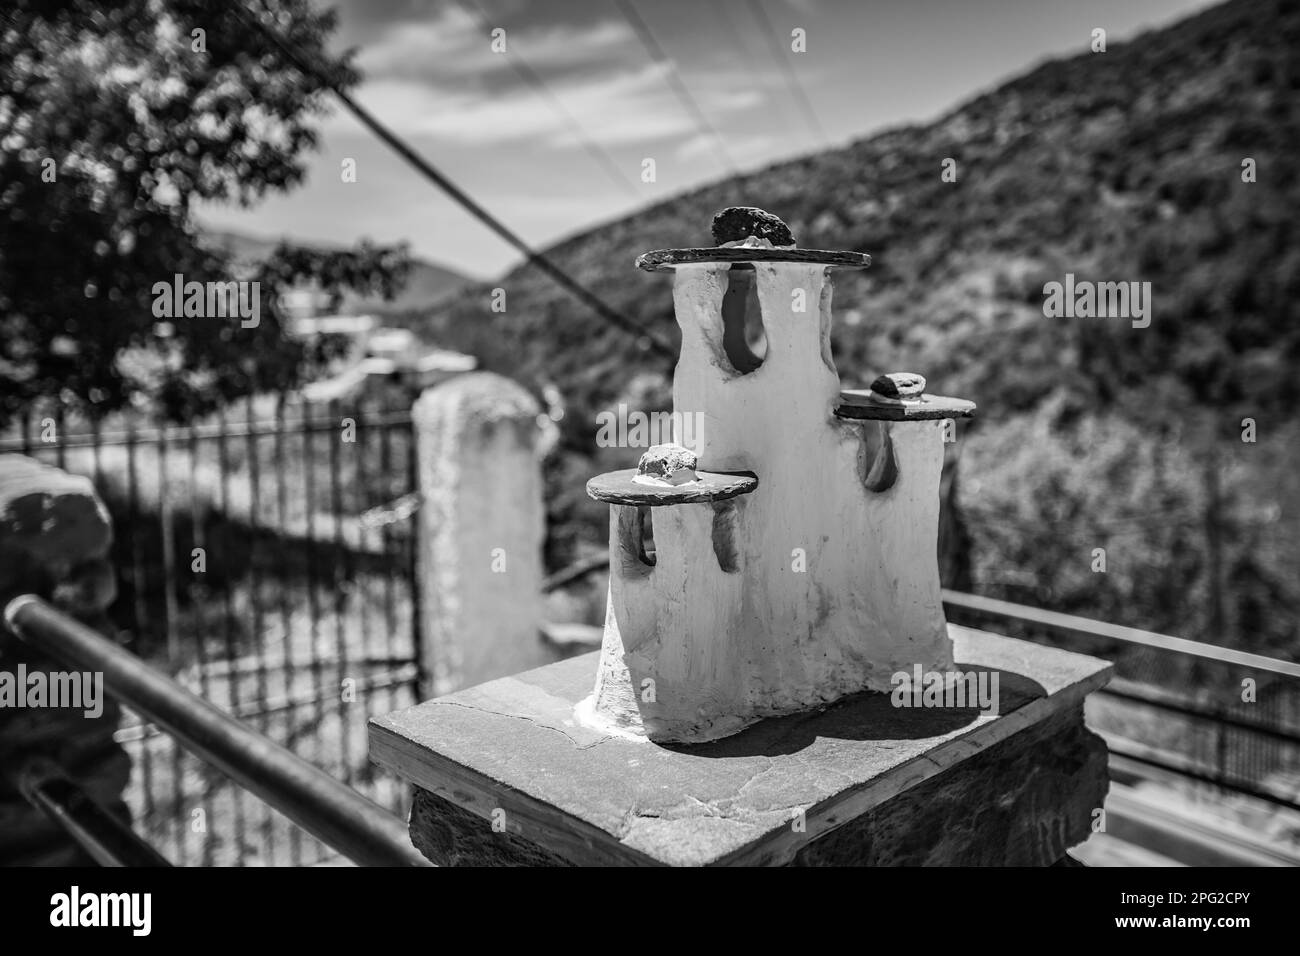 Des décorations de clôture de rue publique dans les formes de cheminées miniatures pourraient être vues au village de Pampaneira, Andalousie, Espagne. Phot noir et blanc Banque D'Images